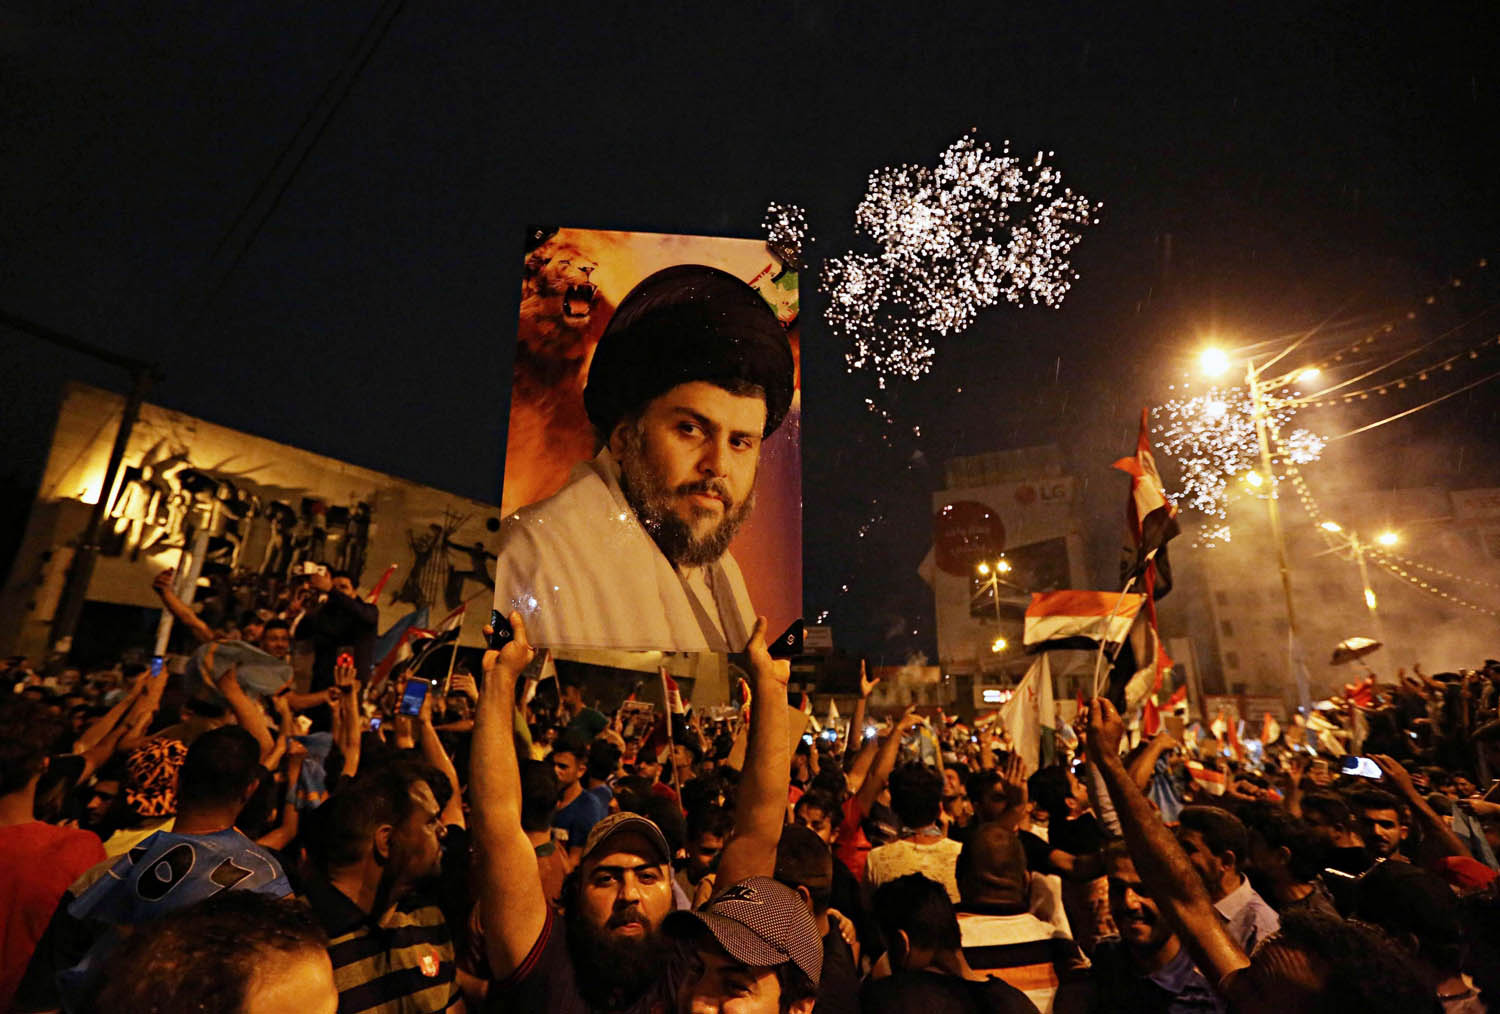 تجمع احتفالي بعد اعلان نتائج الانتخابات العراقية